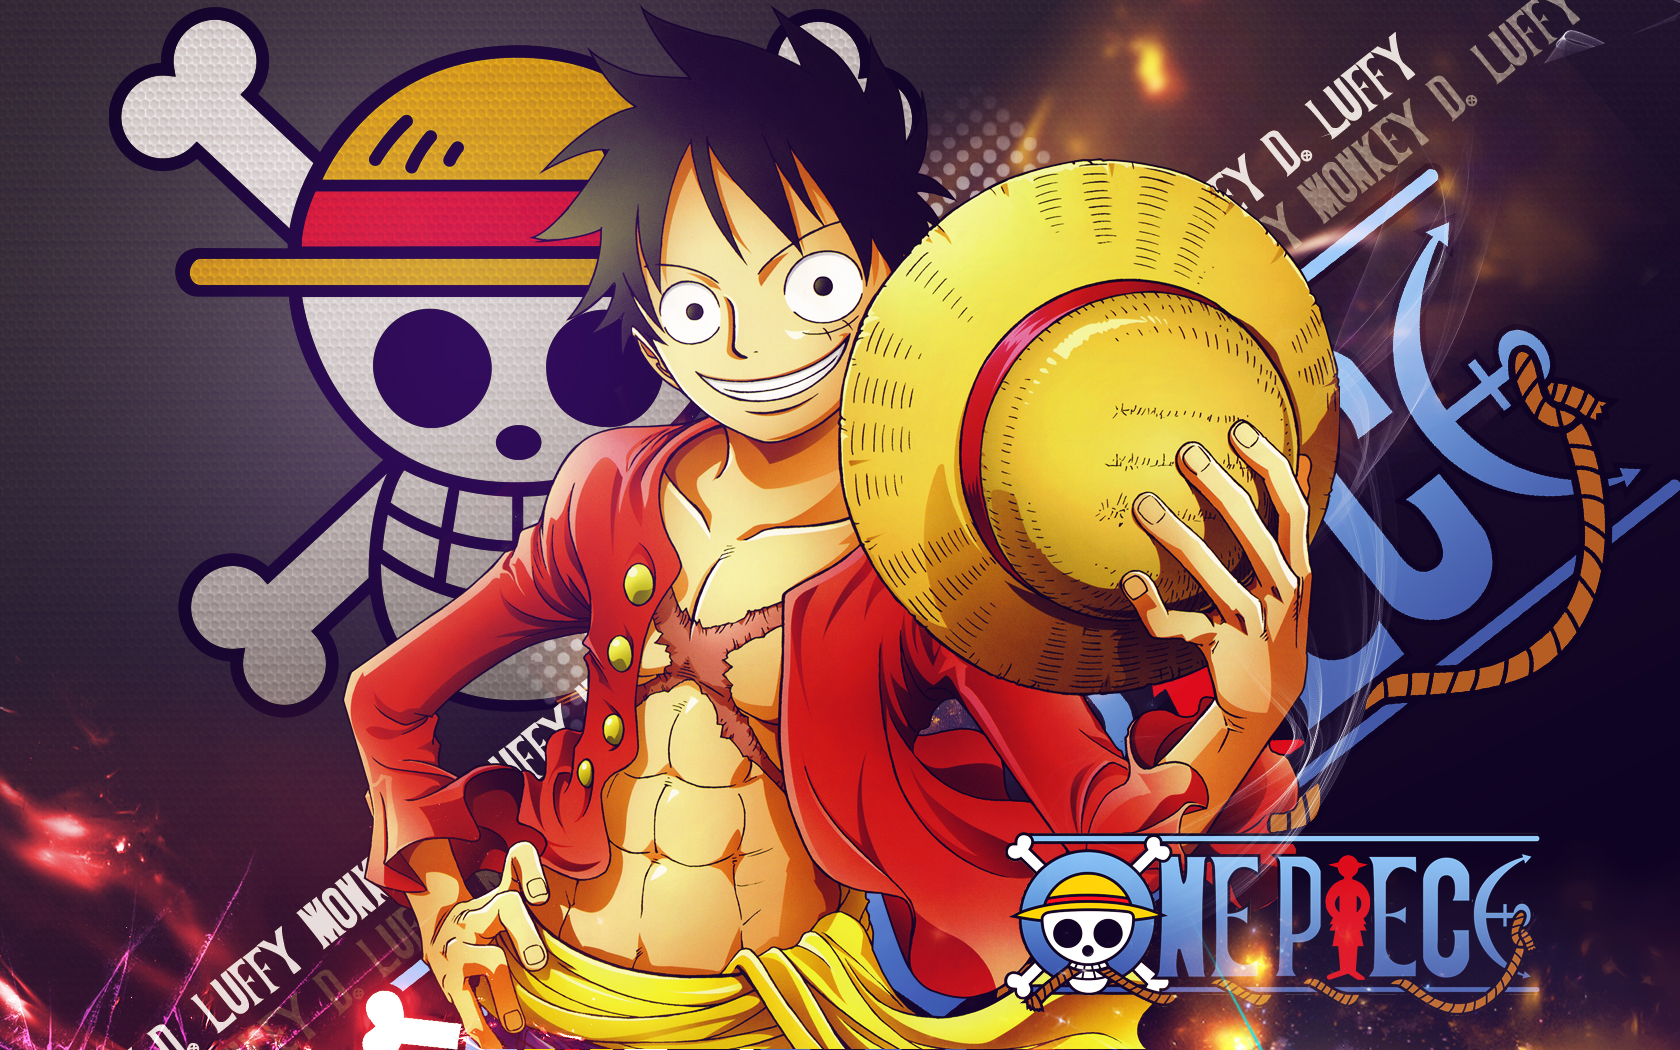 Tìm hiểu về Chiến Lực D (Will of D) và điều hướng đằng sau câu chuyện One Piece. Hình ảnh liên quan đến Chiến Lực D sẽ giúp bạn hiểu rõ hơn về những bí ẩn của vũ trụ One Piece, đồng thời cũng giúp bạn tăng thêm niềm đam mê với bộ phim.